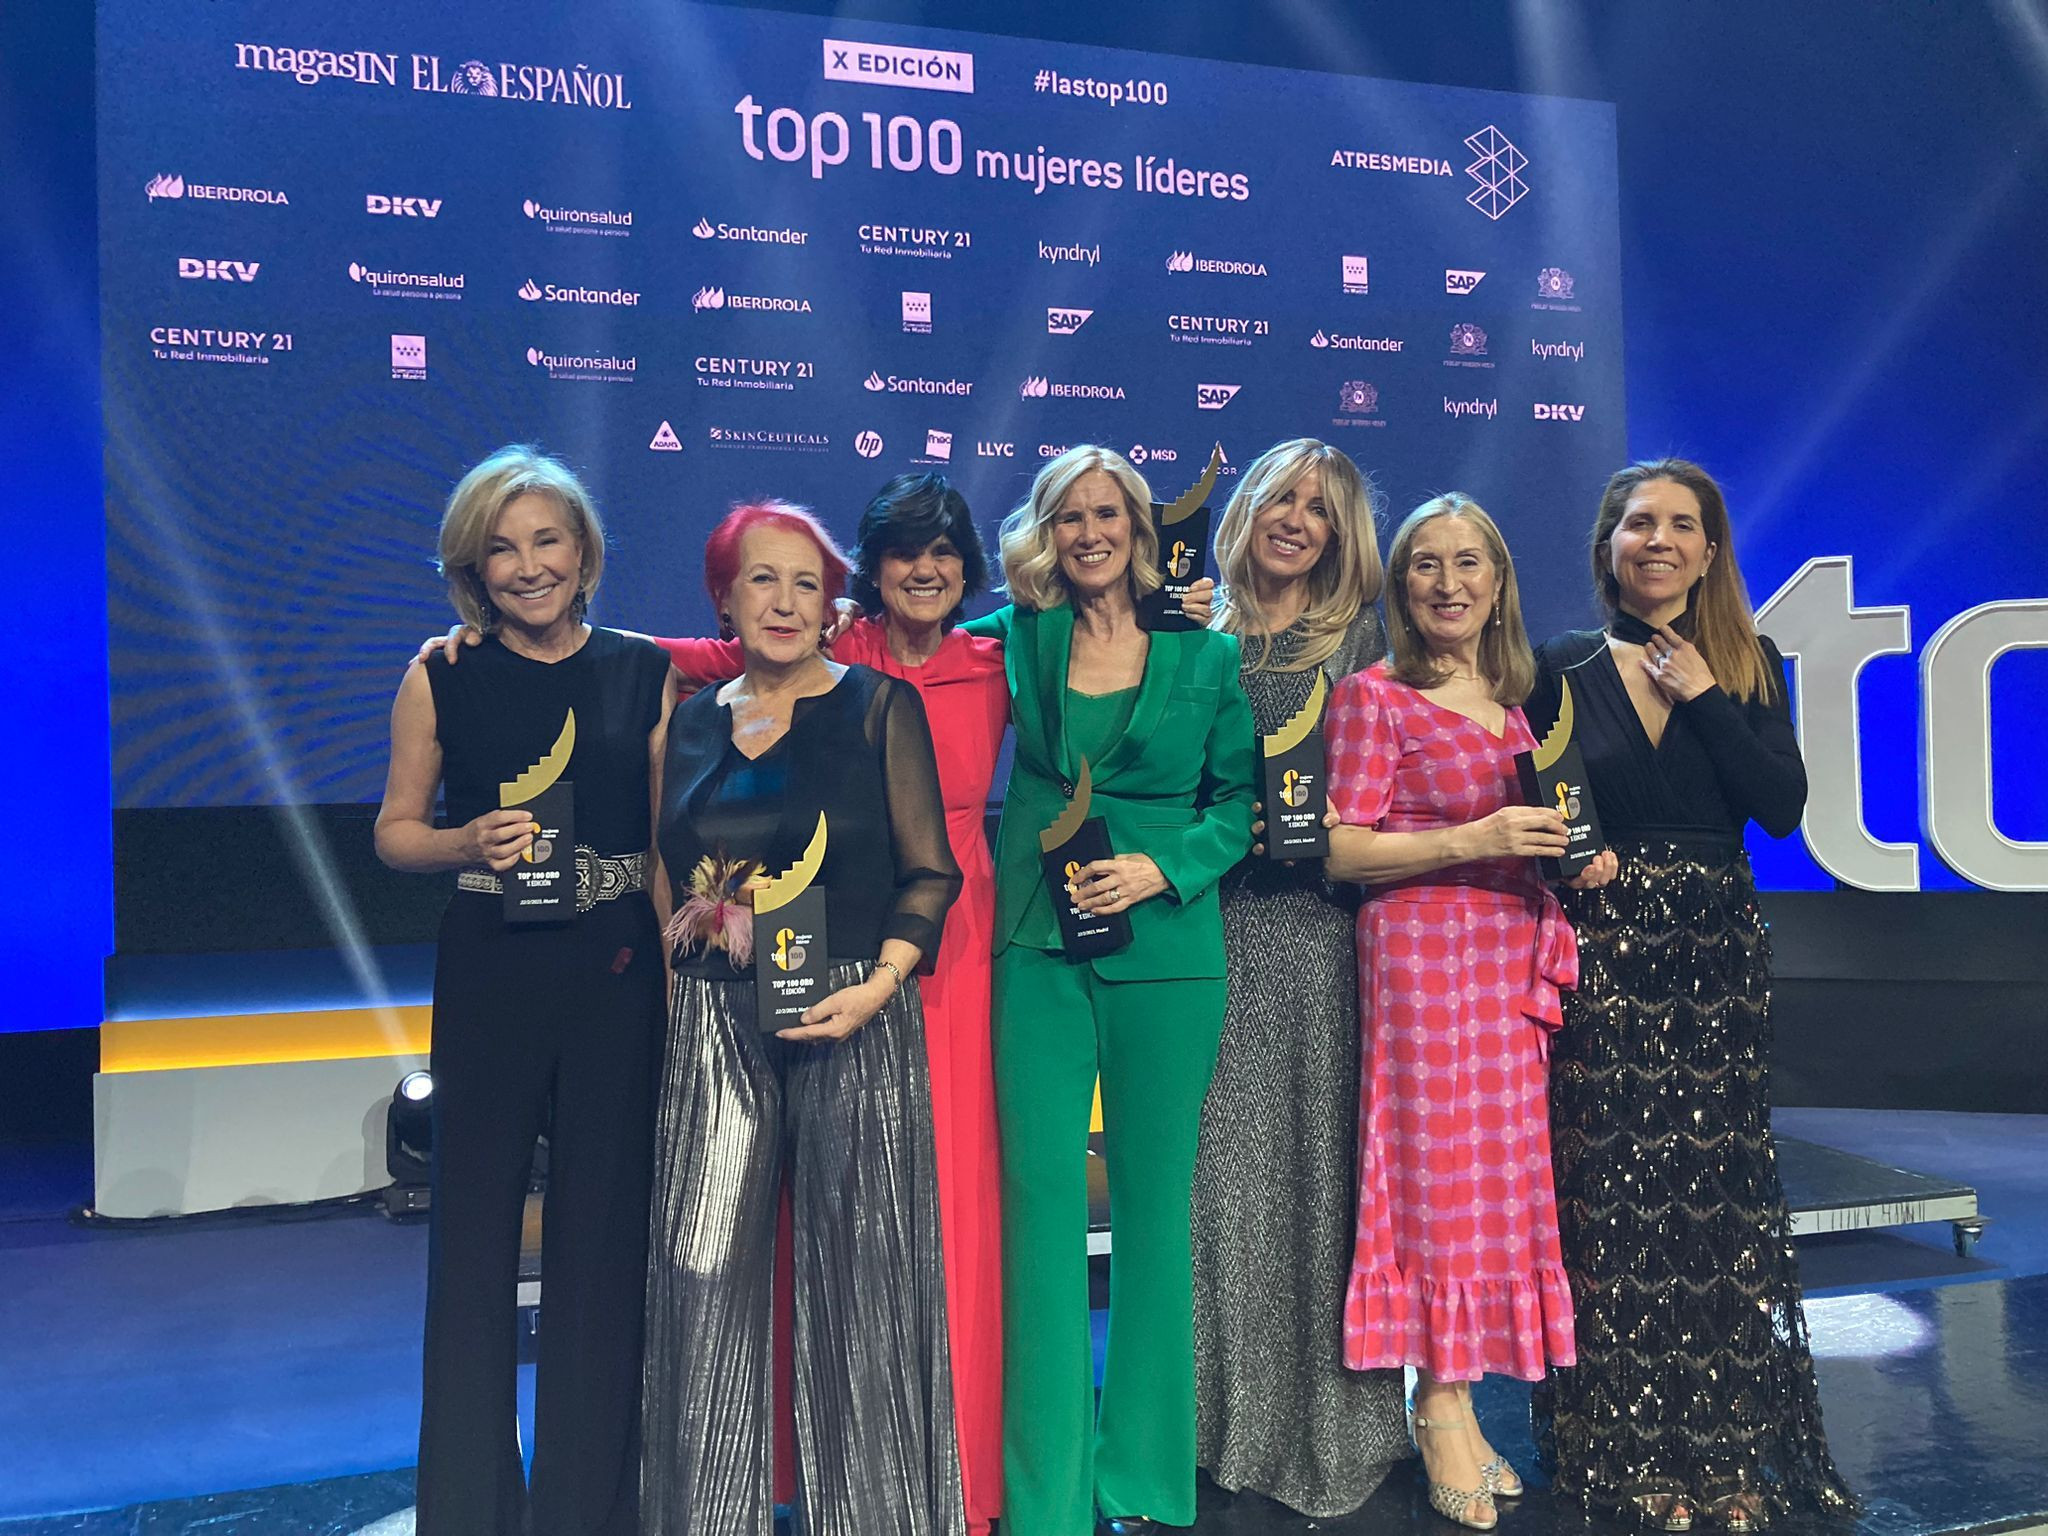 Las honorarias de oro que han podido asistir a la gala de 'Las Top 100 mujeres líderes en España' / FRAN GUERRA - EP